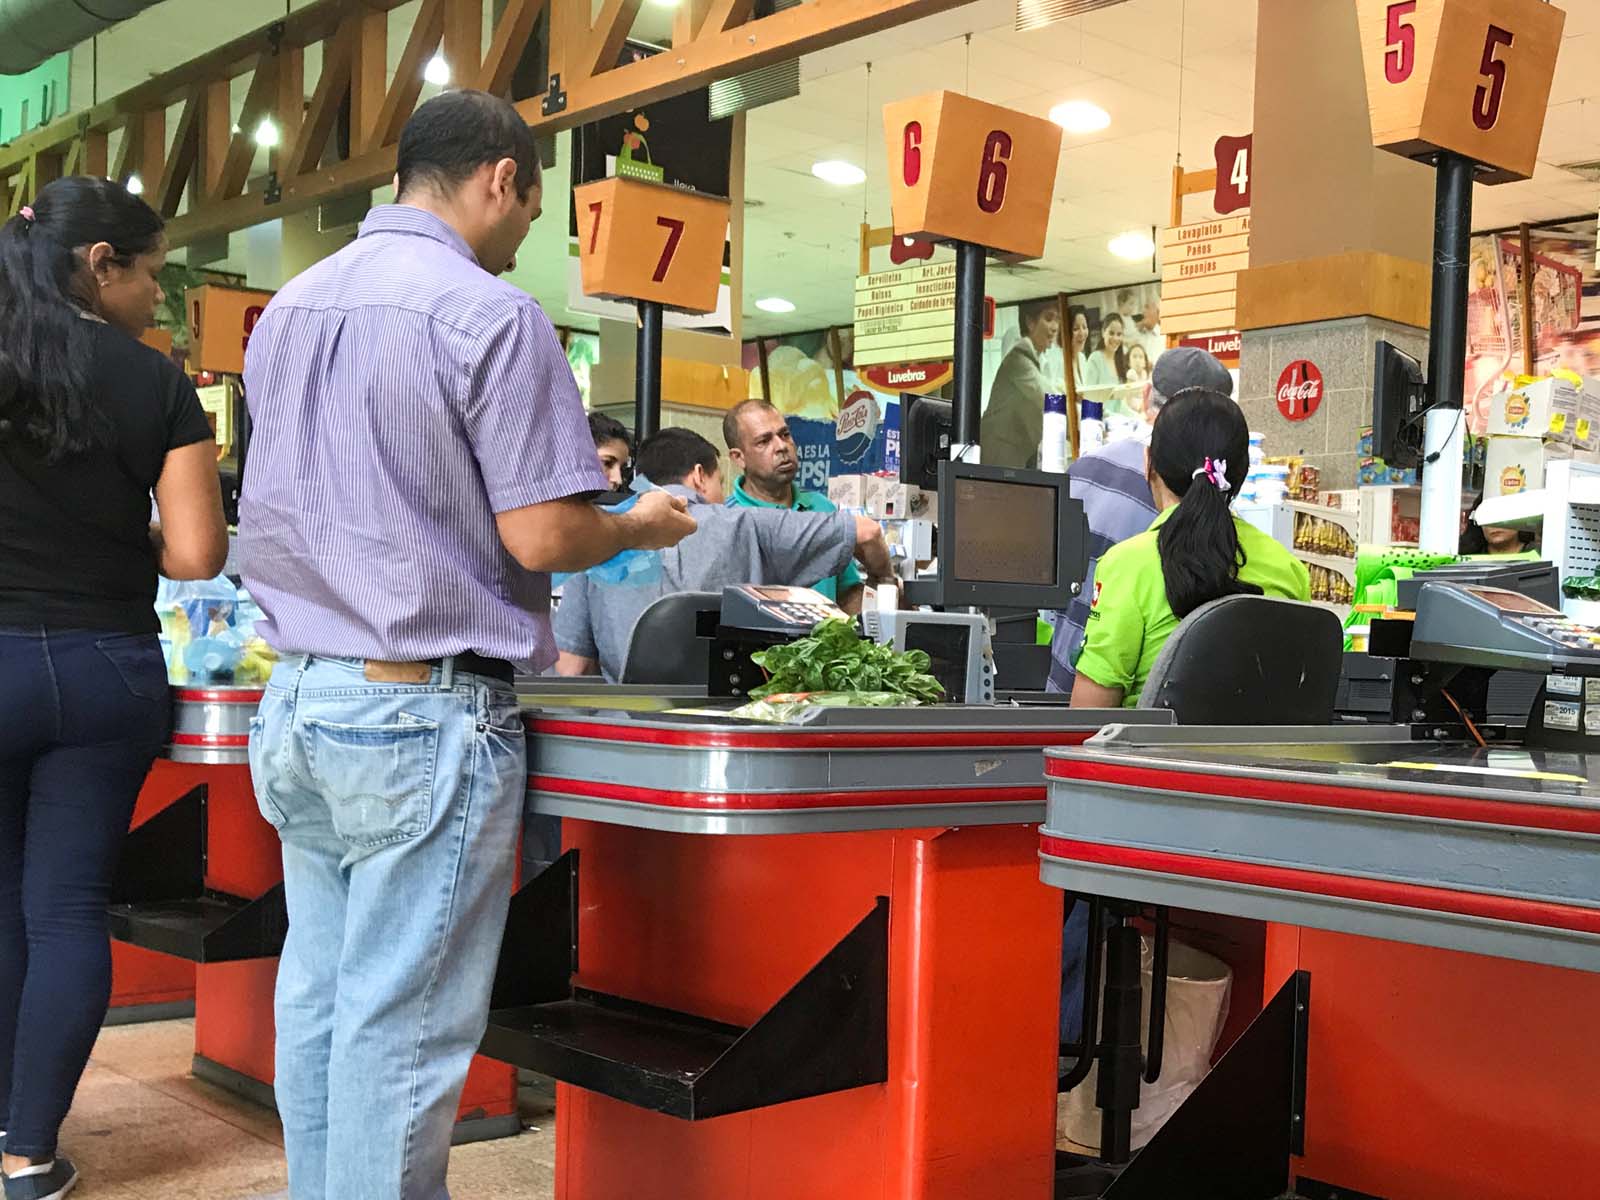 ¡Solo en Venezuela! El contraste de las colas para pagar con dólares y bolívares en un supermercado en Caracas (Foto)